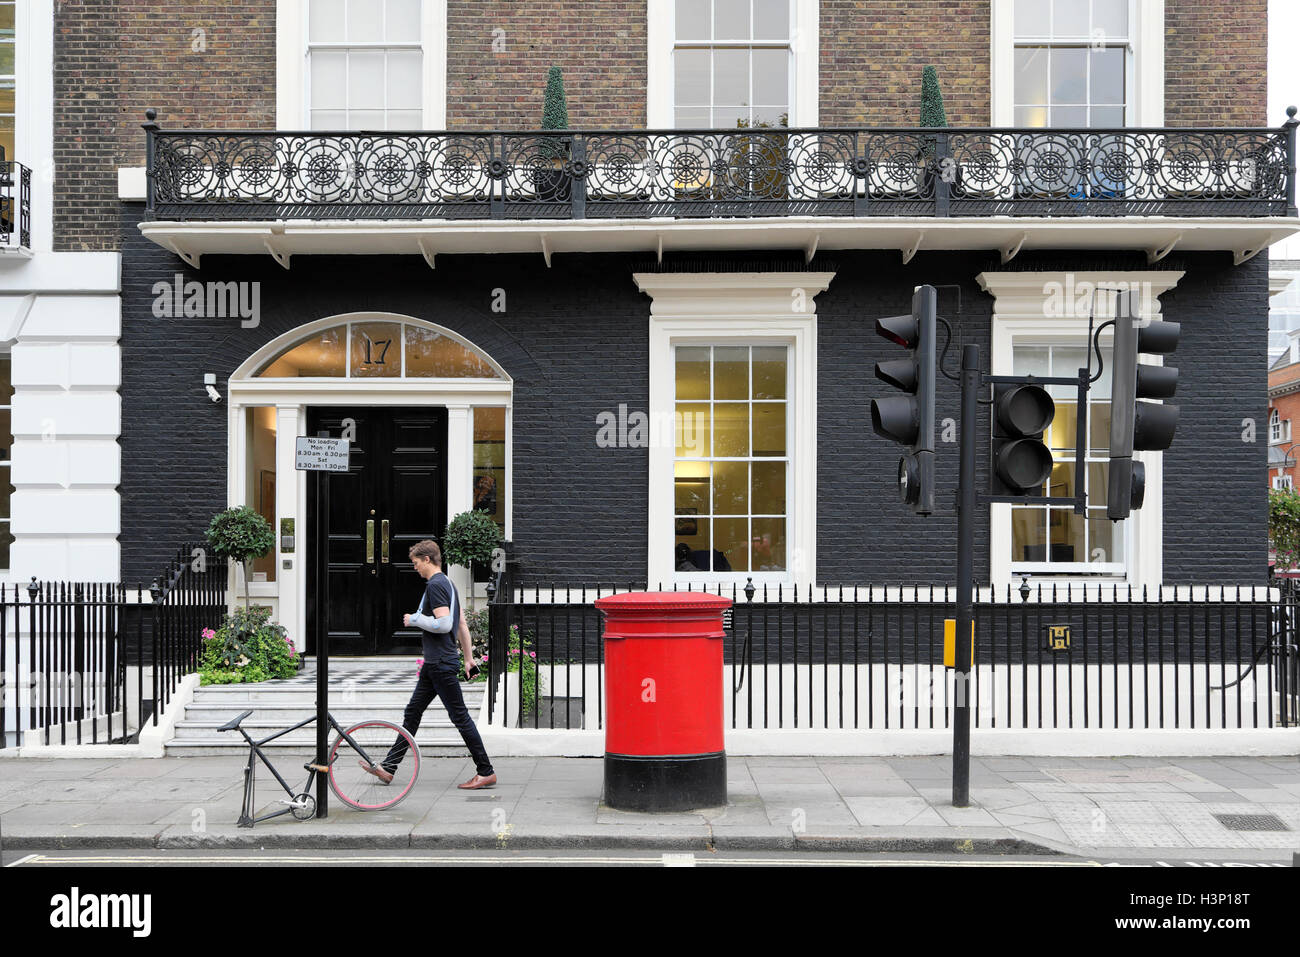 Ein Mann mit Arm in Cast, der am Harley Street Medical Center vorbeiläuft, roter Briefkasten und verriegeltem Fahrradrahmen mit einem Rad W1G London England UK KATHY DEWITT Stockfoto